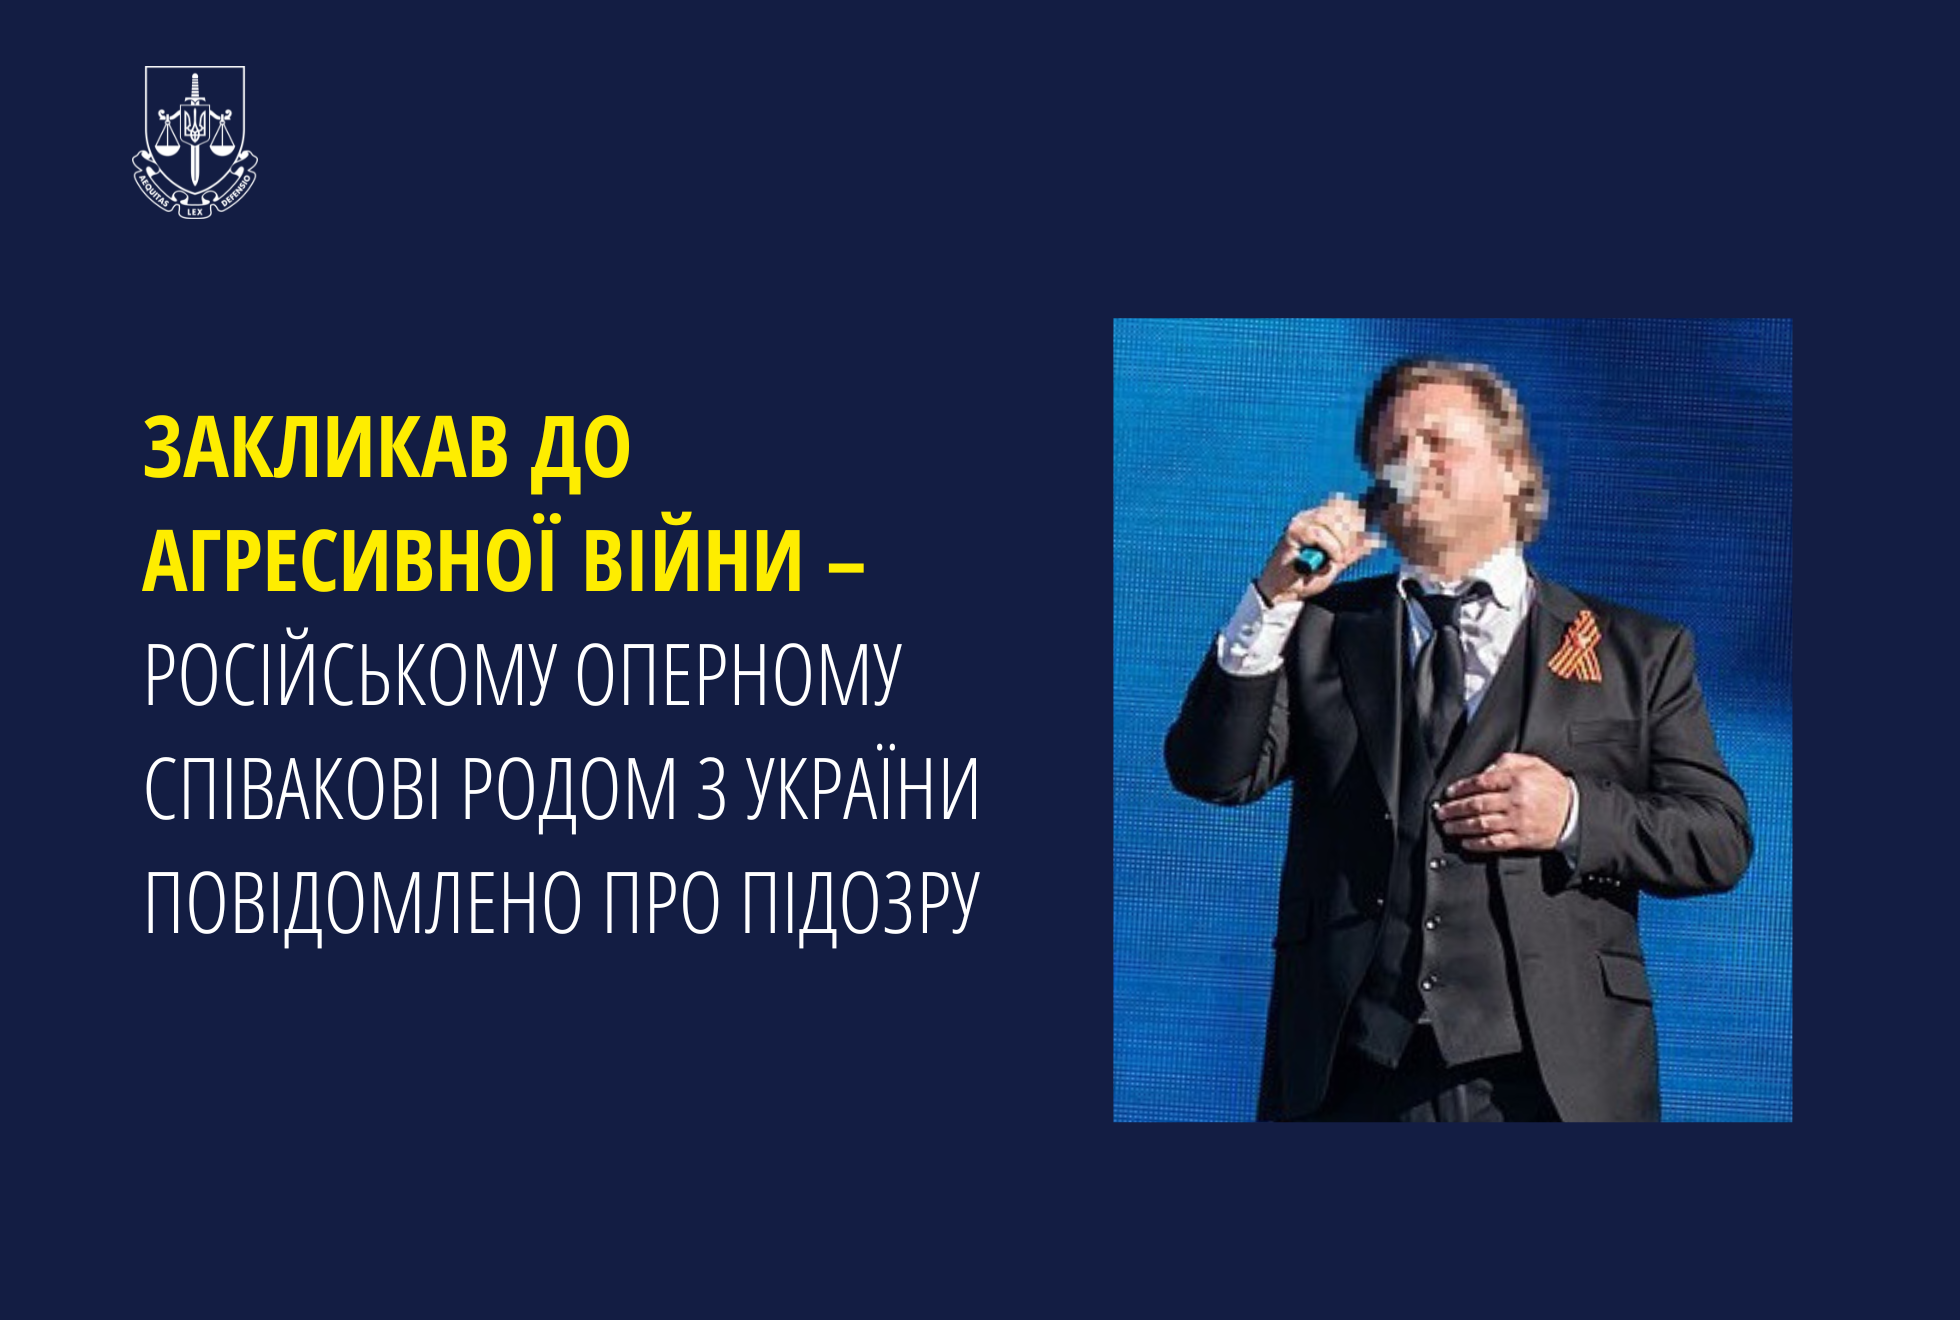 Закликав до агресивної війни – російському оперному співакові родом з України повідомлено про підозру